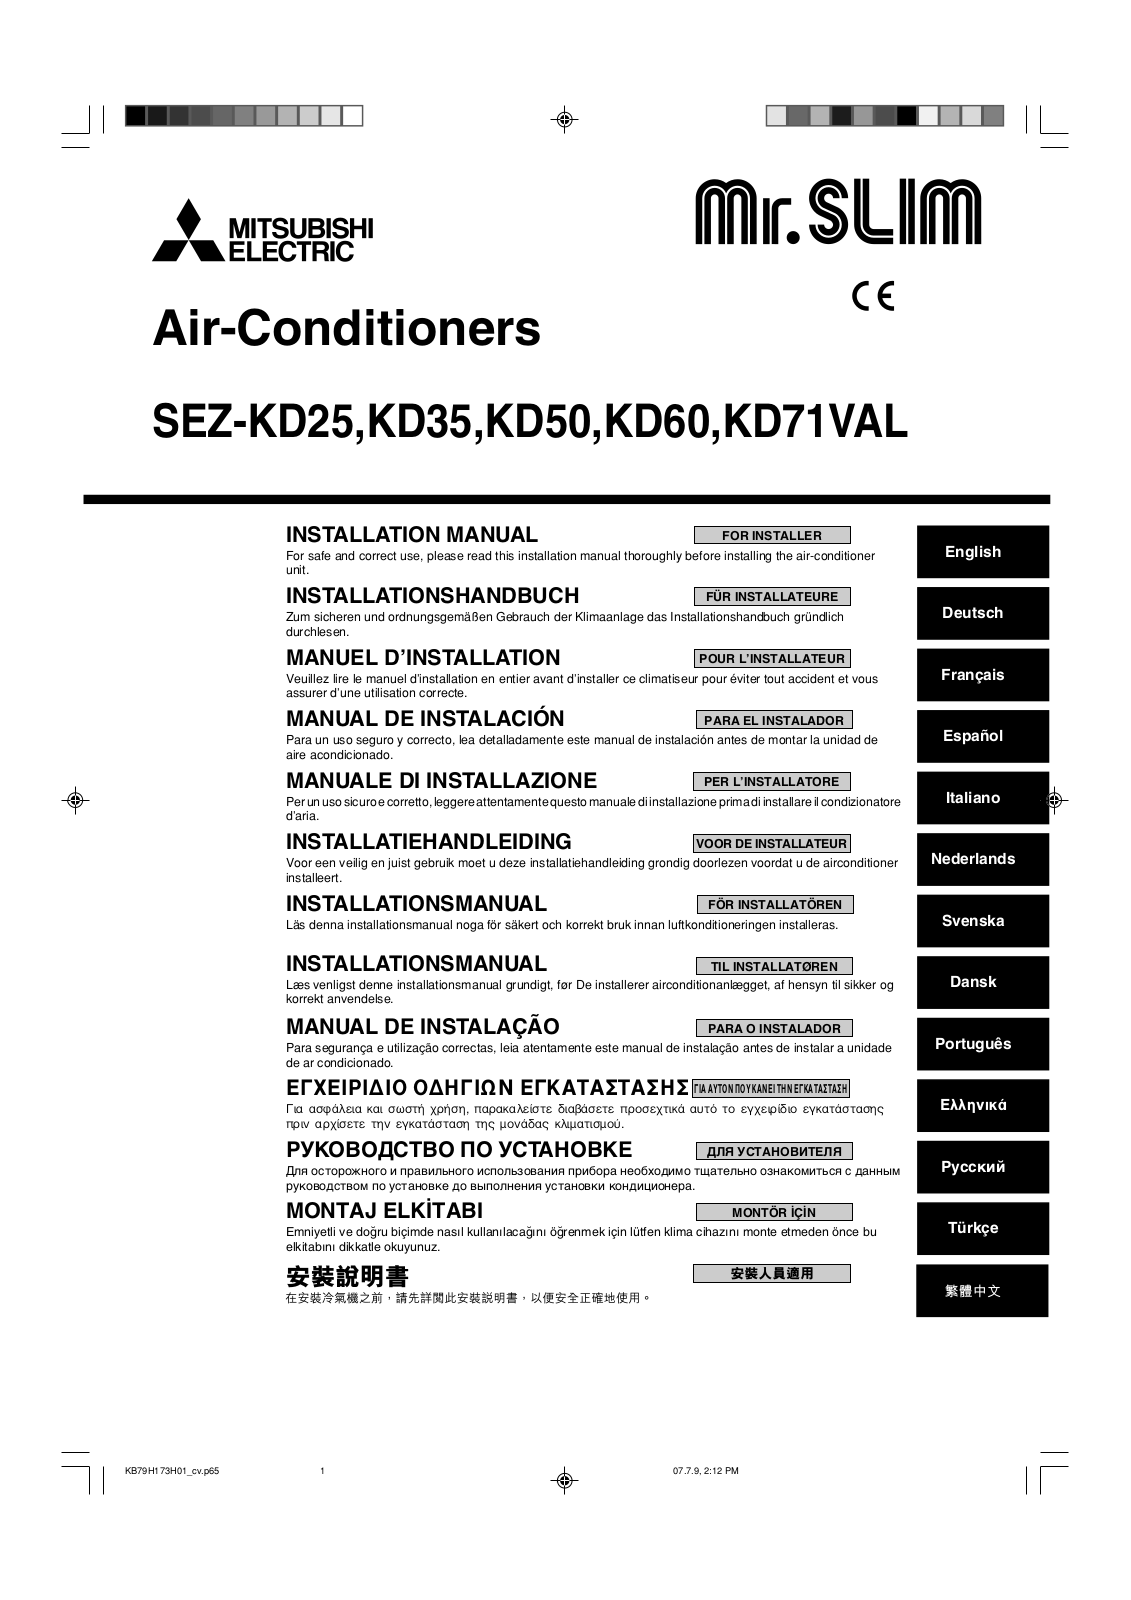 Mitsubishi SEZ-KD25VAL, SEZ-KD35VAL, SEZ-KD50VAL, SEZ-KD60VAL, SEZ-KD71VAL Installation Manual